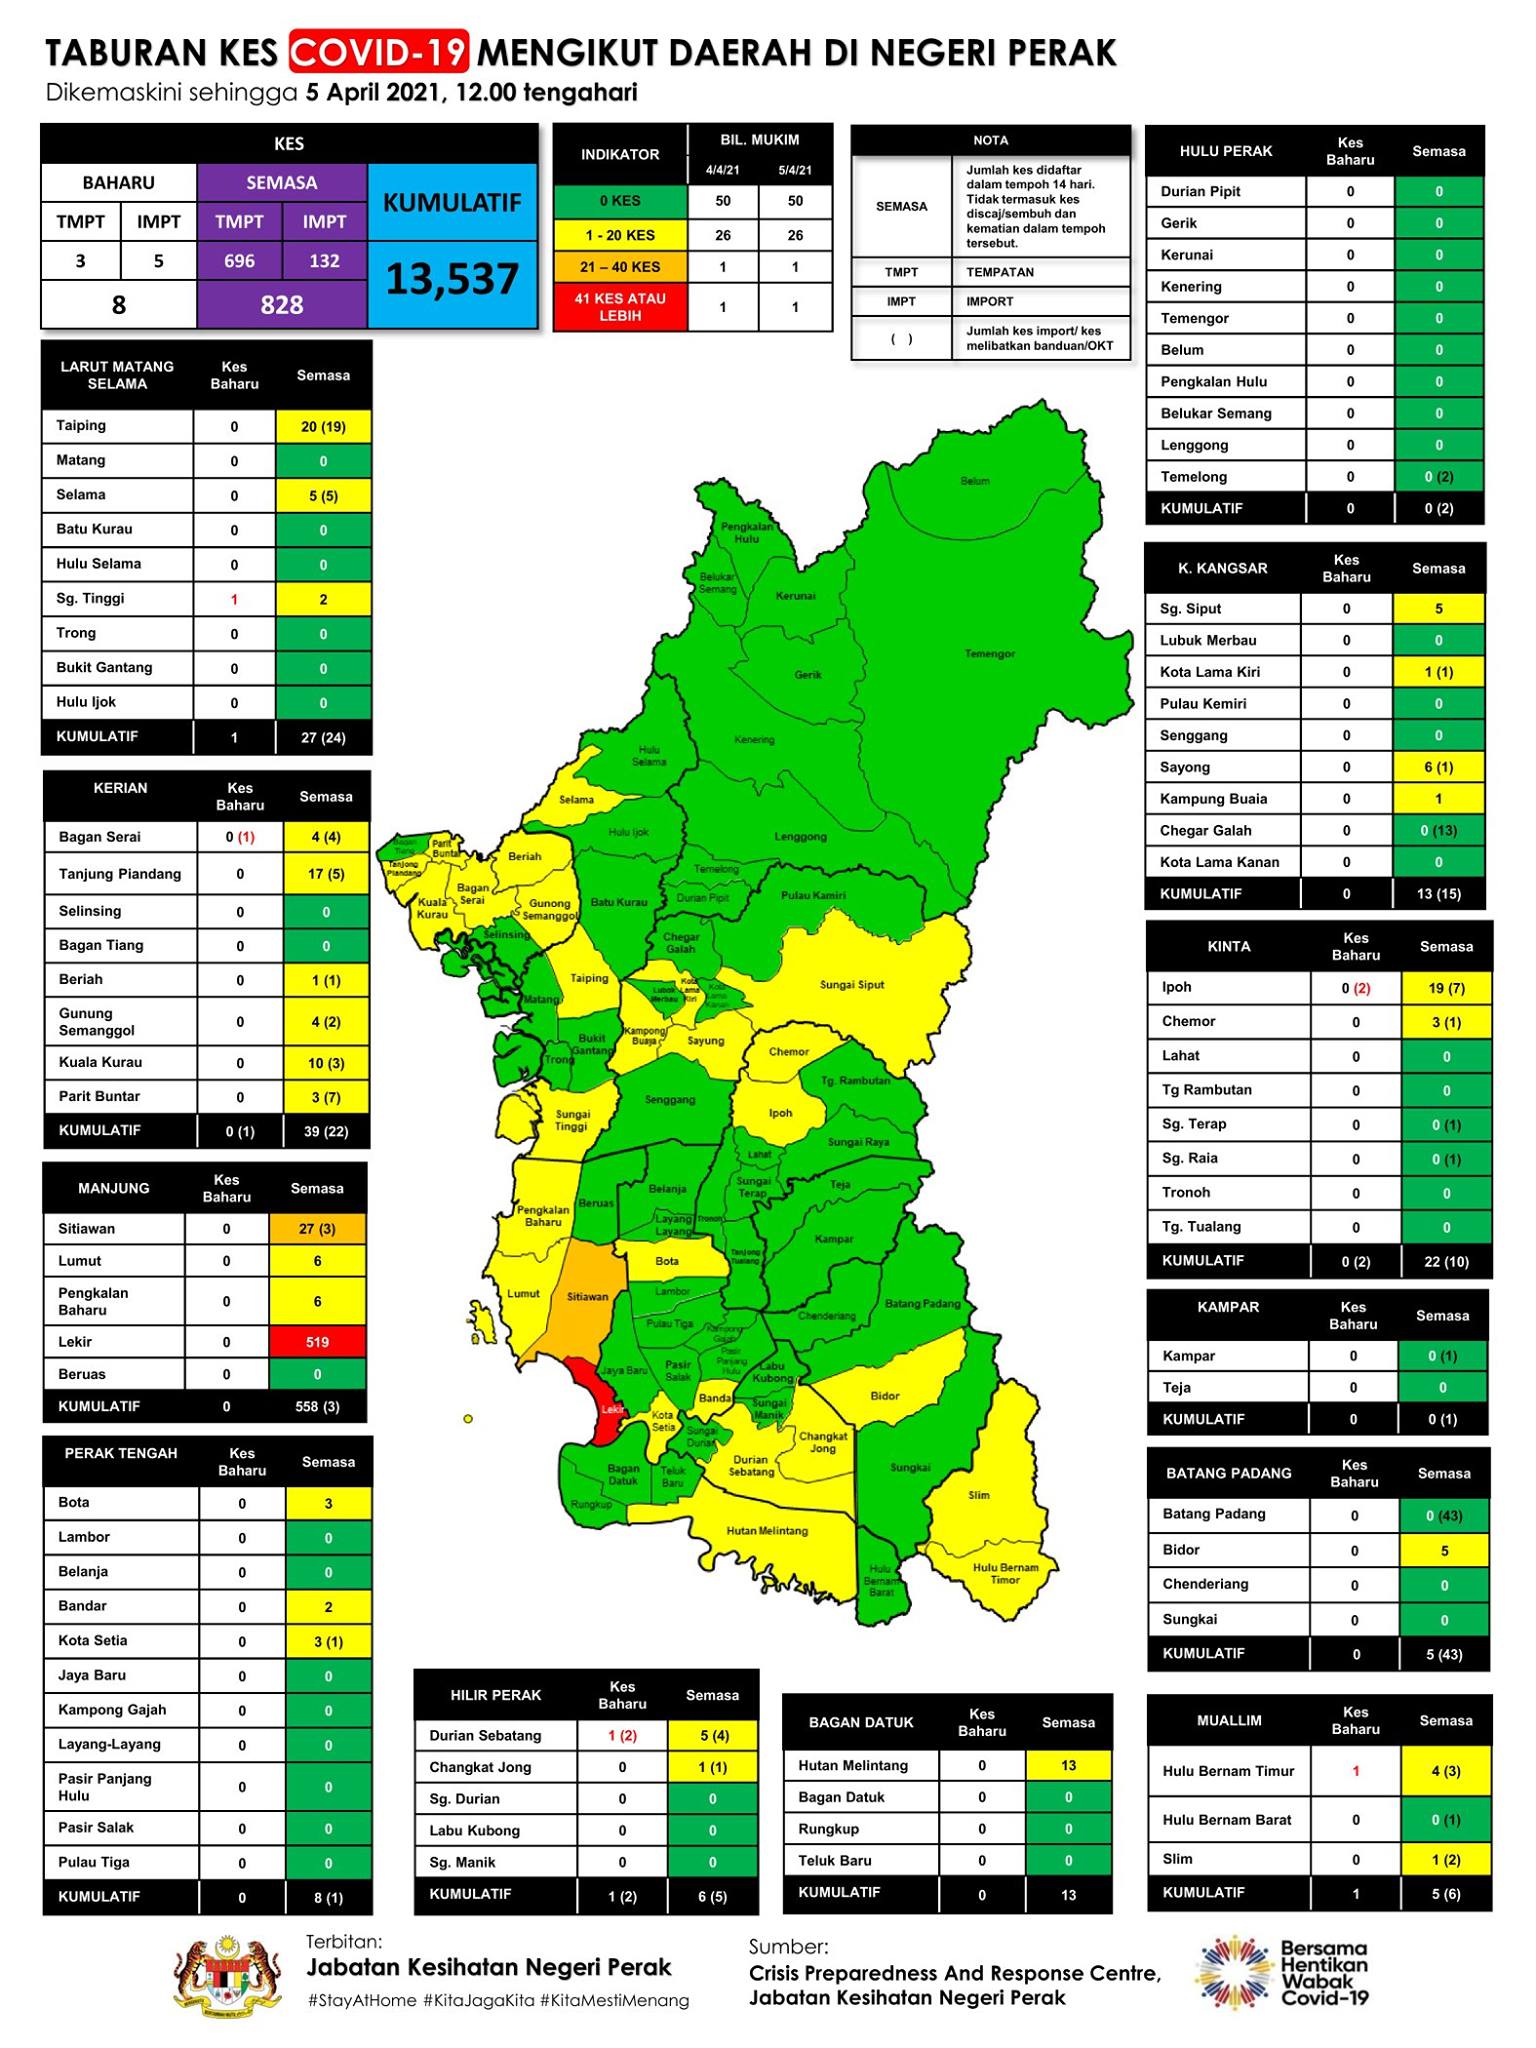 霹雳今日新增8宗病例分布在5个县 ，其中下霹雳有3宗占最多。

